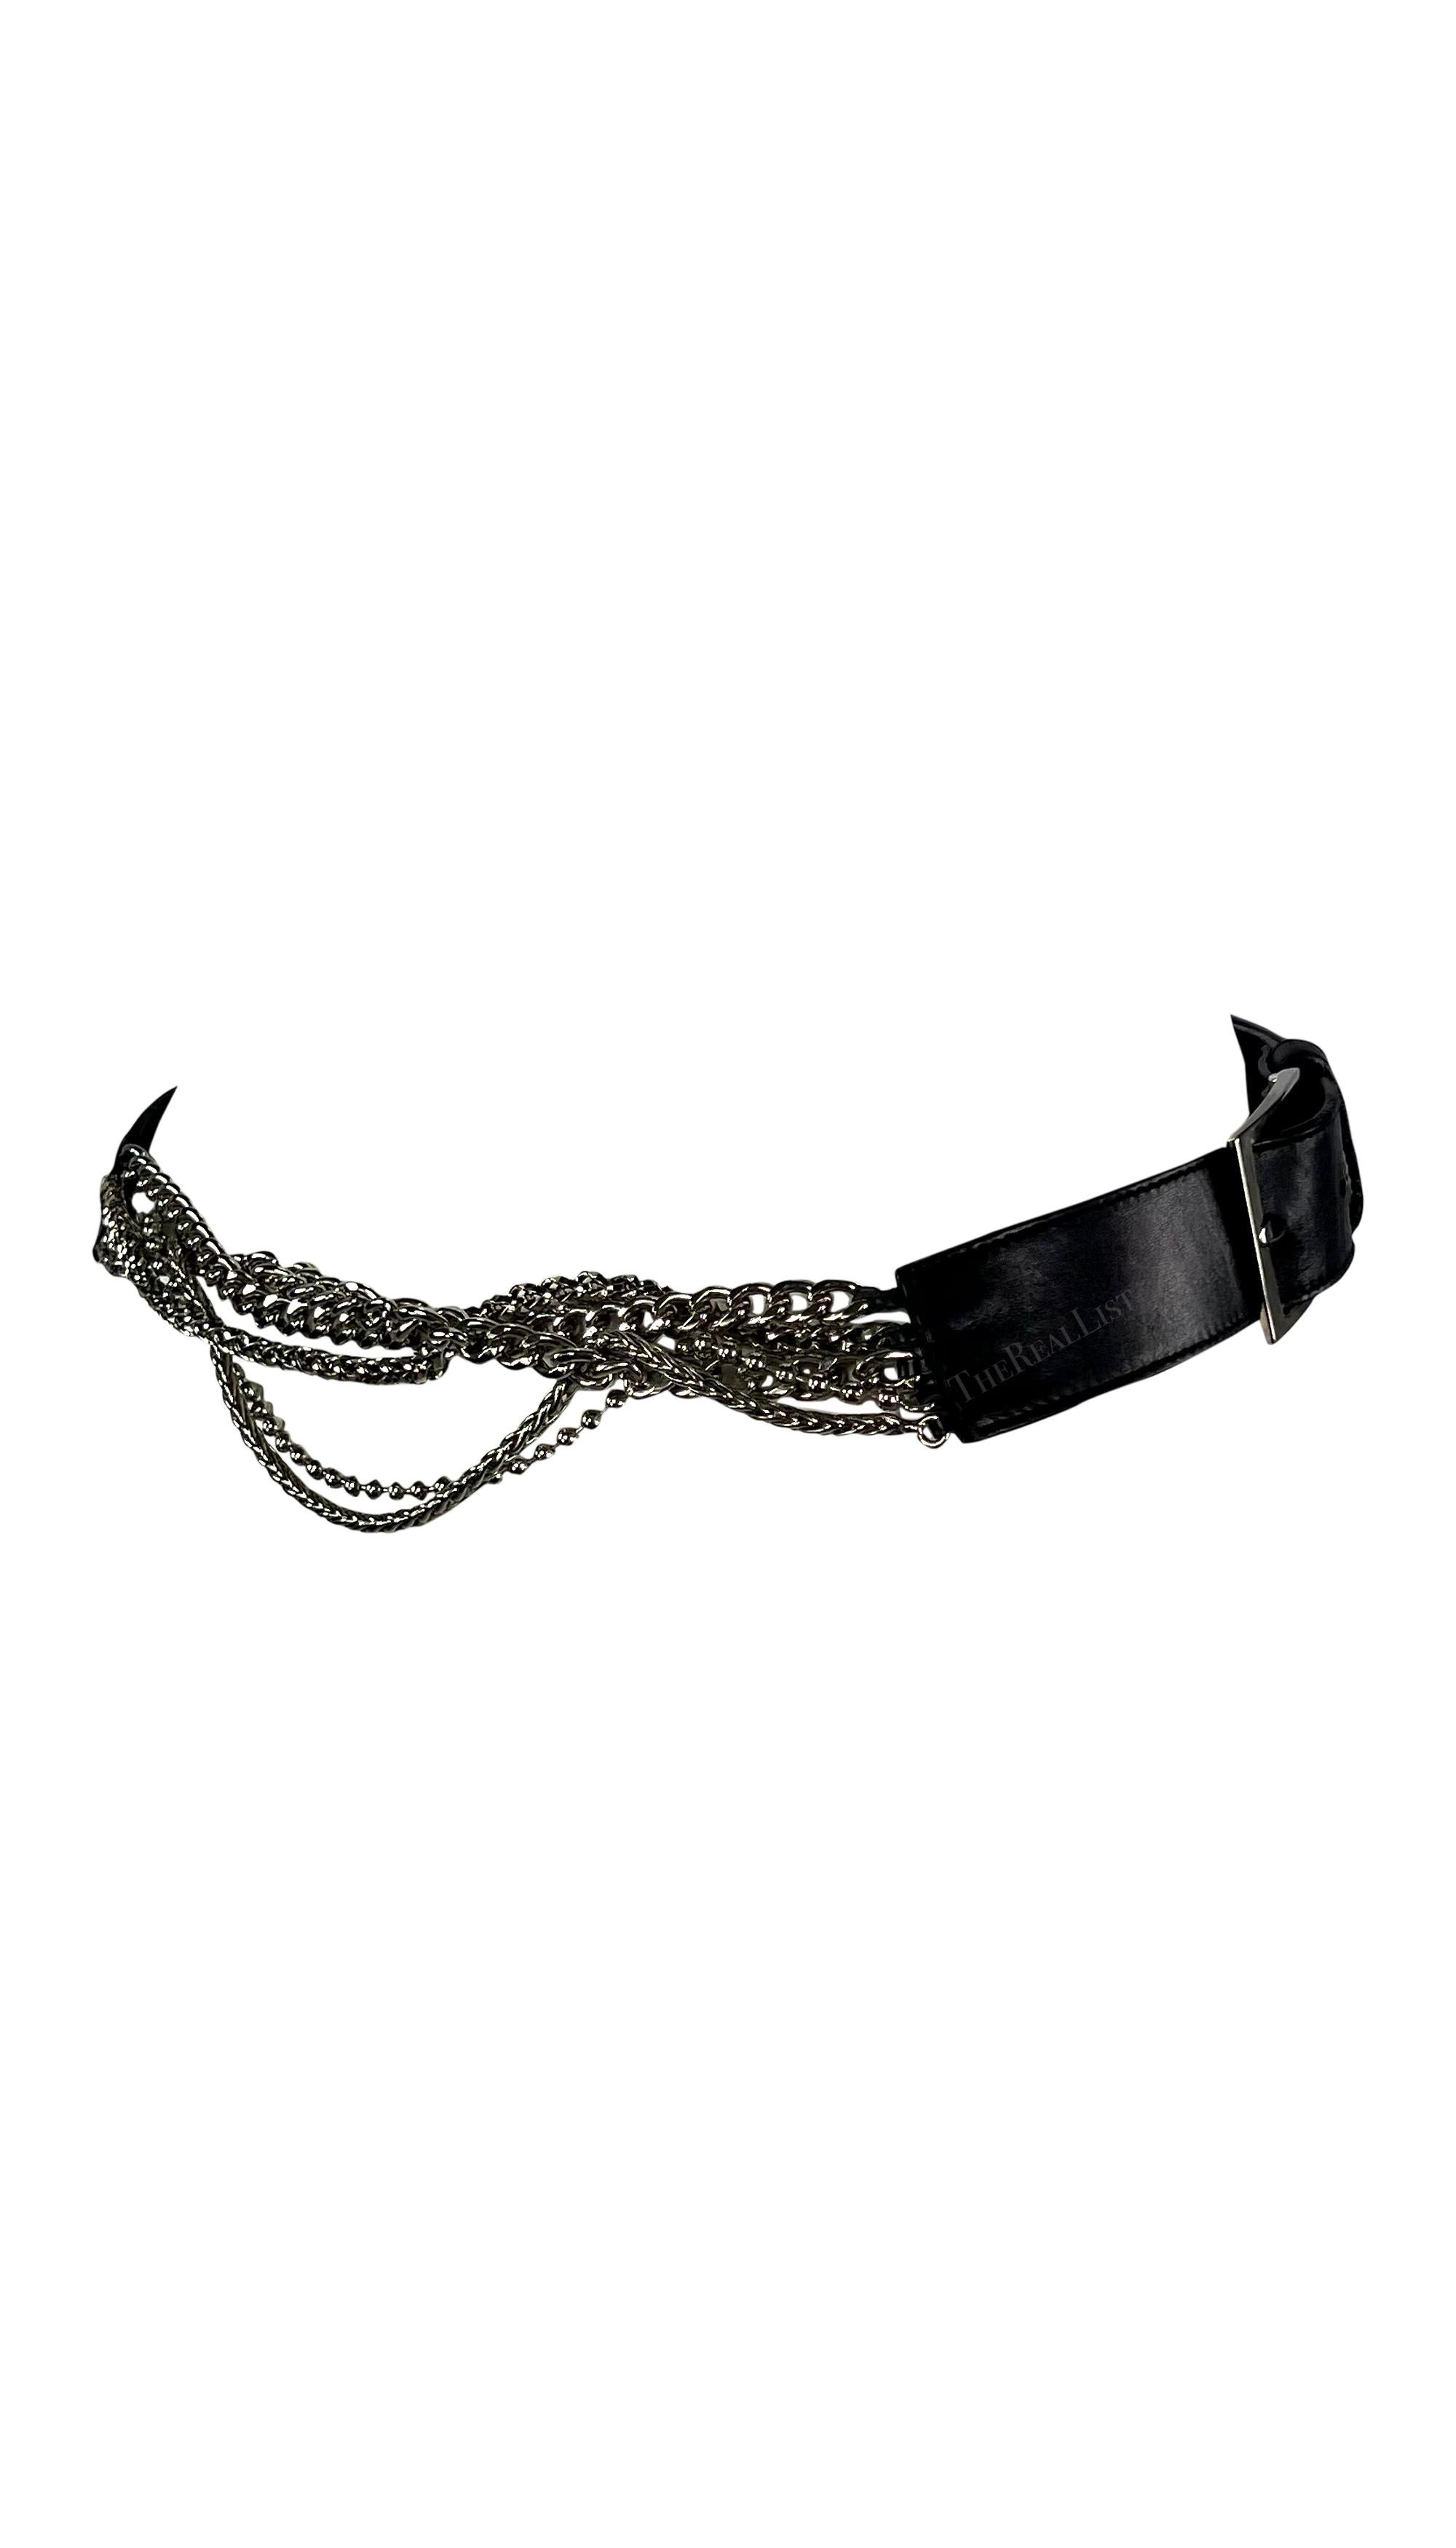 Dieser fabelhafte Versace-Gürtel mit schwarzer Lederkette wurde von Donatella Versace entworfen. Dieser Gürtel aus den frühen 2000er Jahren ist aus Leder und verchromten Metallketten gefertigt. Der Gürtel verfügt über zwei quadratische Schnallen und